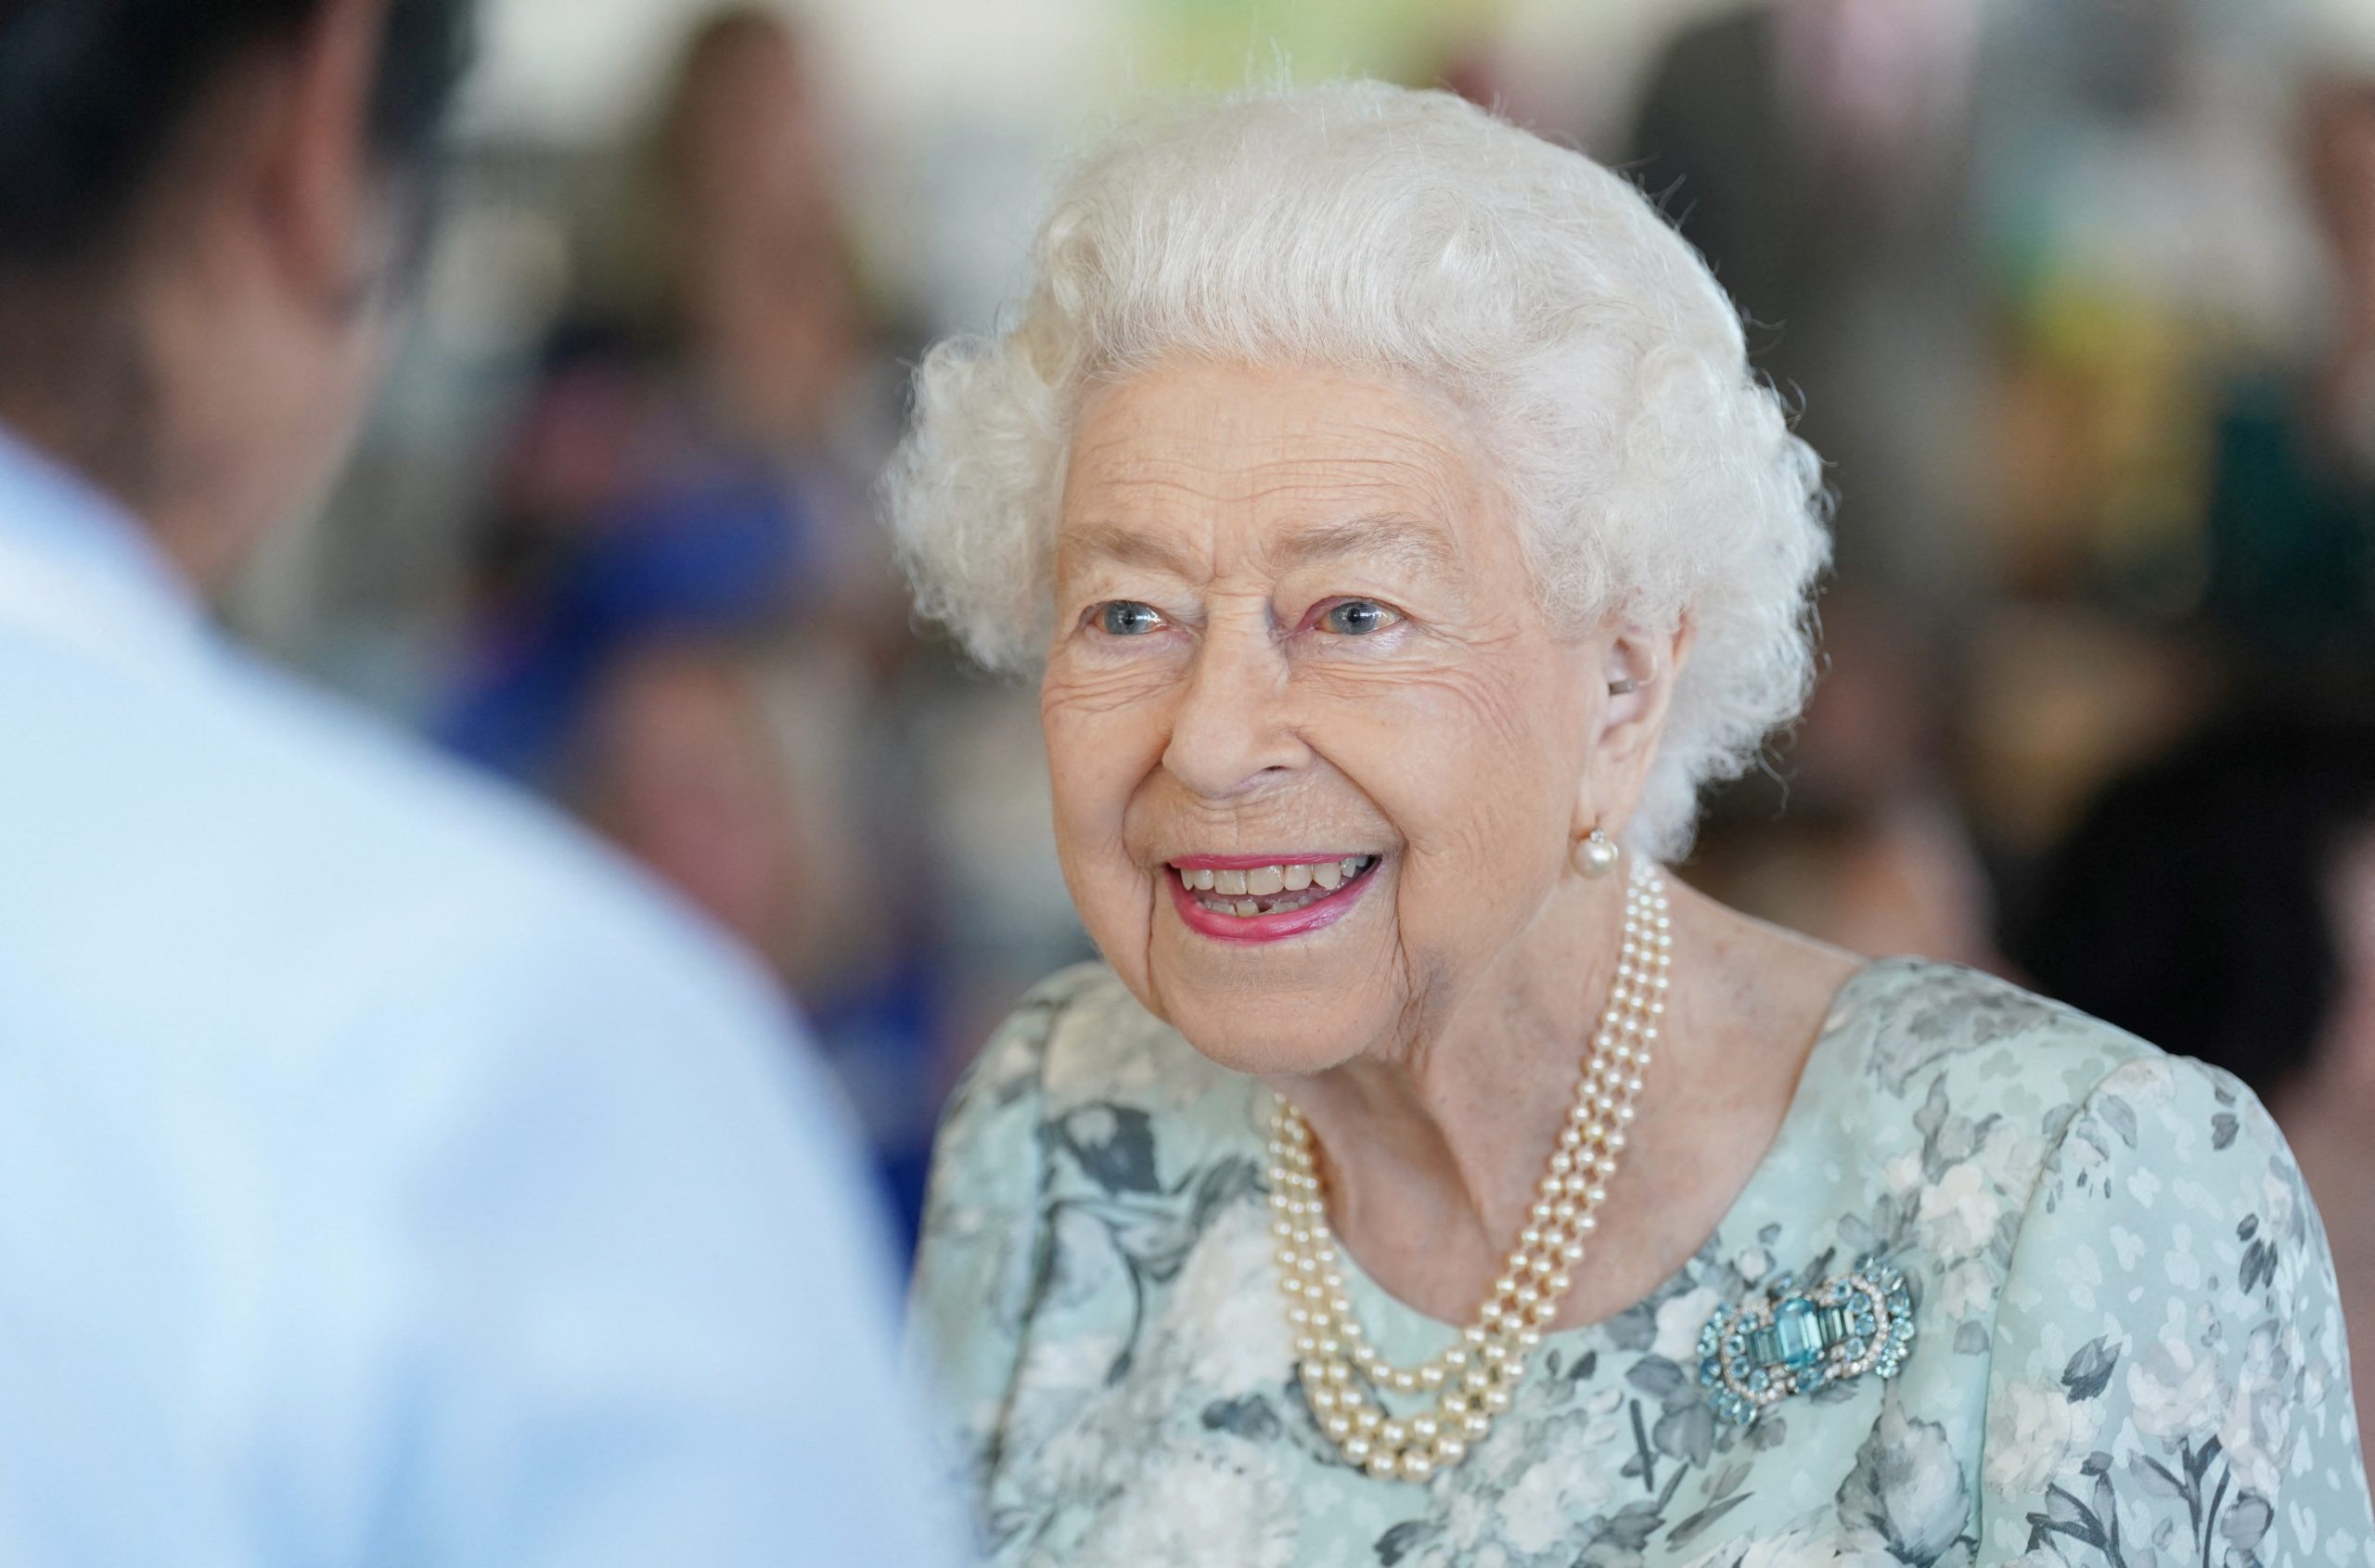 Morre Elizabeth II, rainha do Reino Unido e a monarca mais longeva da história